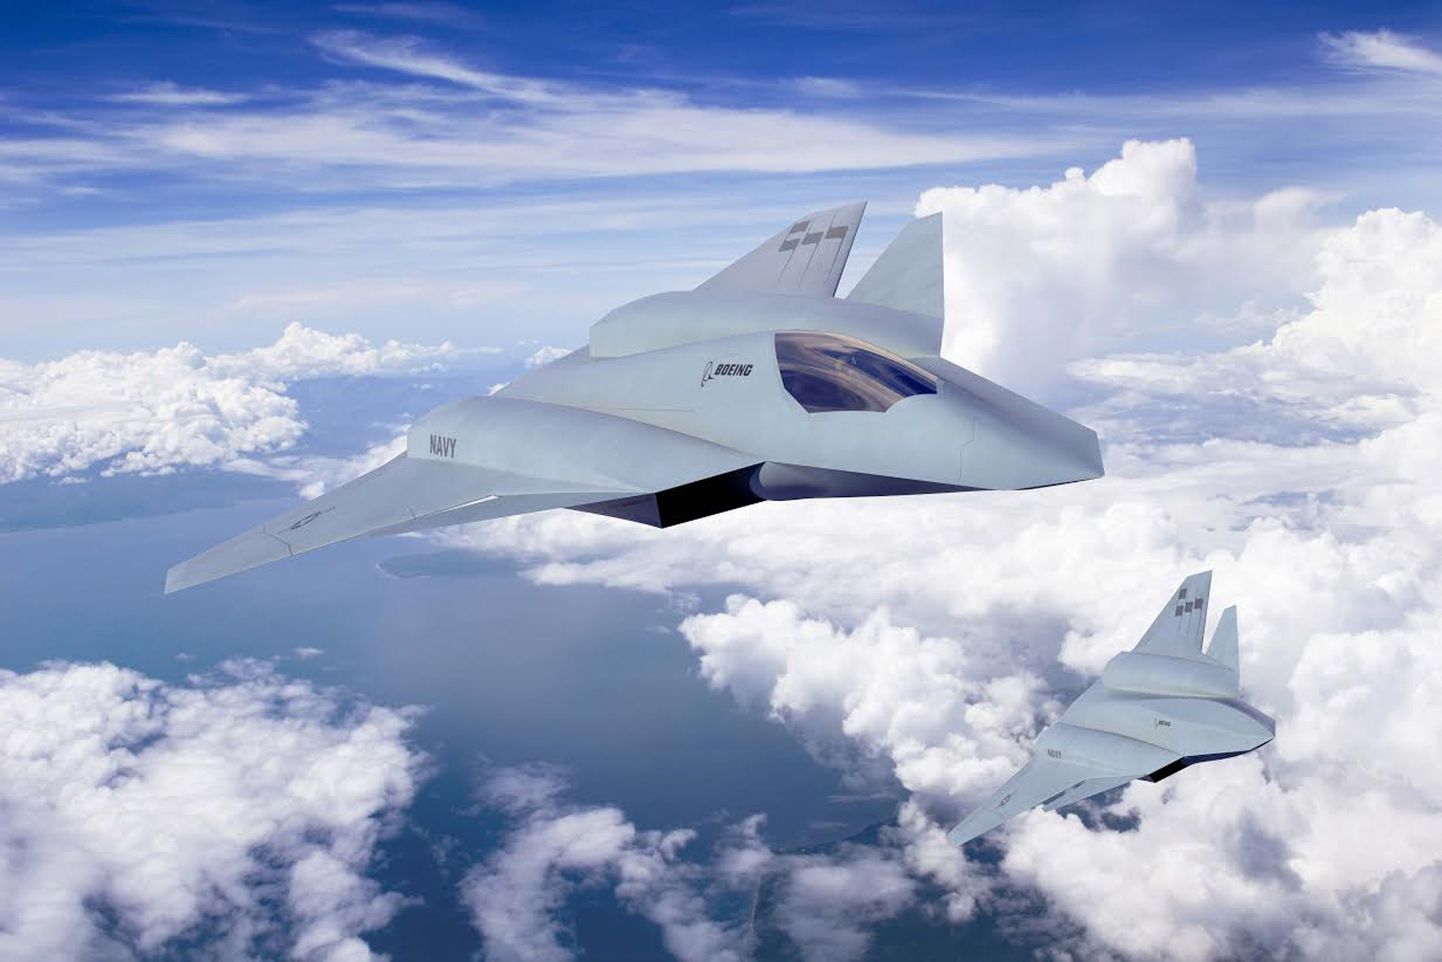 Arvutianimatsioon Boeingu järgmise generatsiooni X-lennukist, milleks võib saada F-35 edukas järglane.